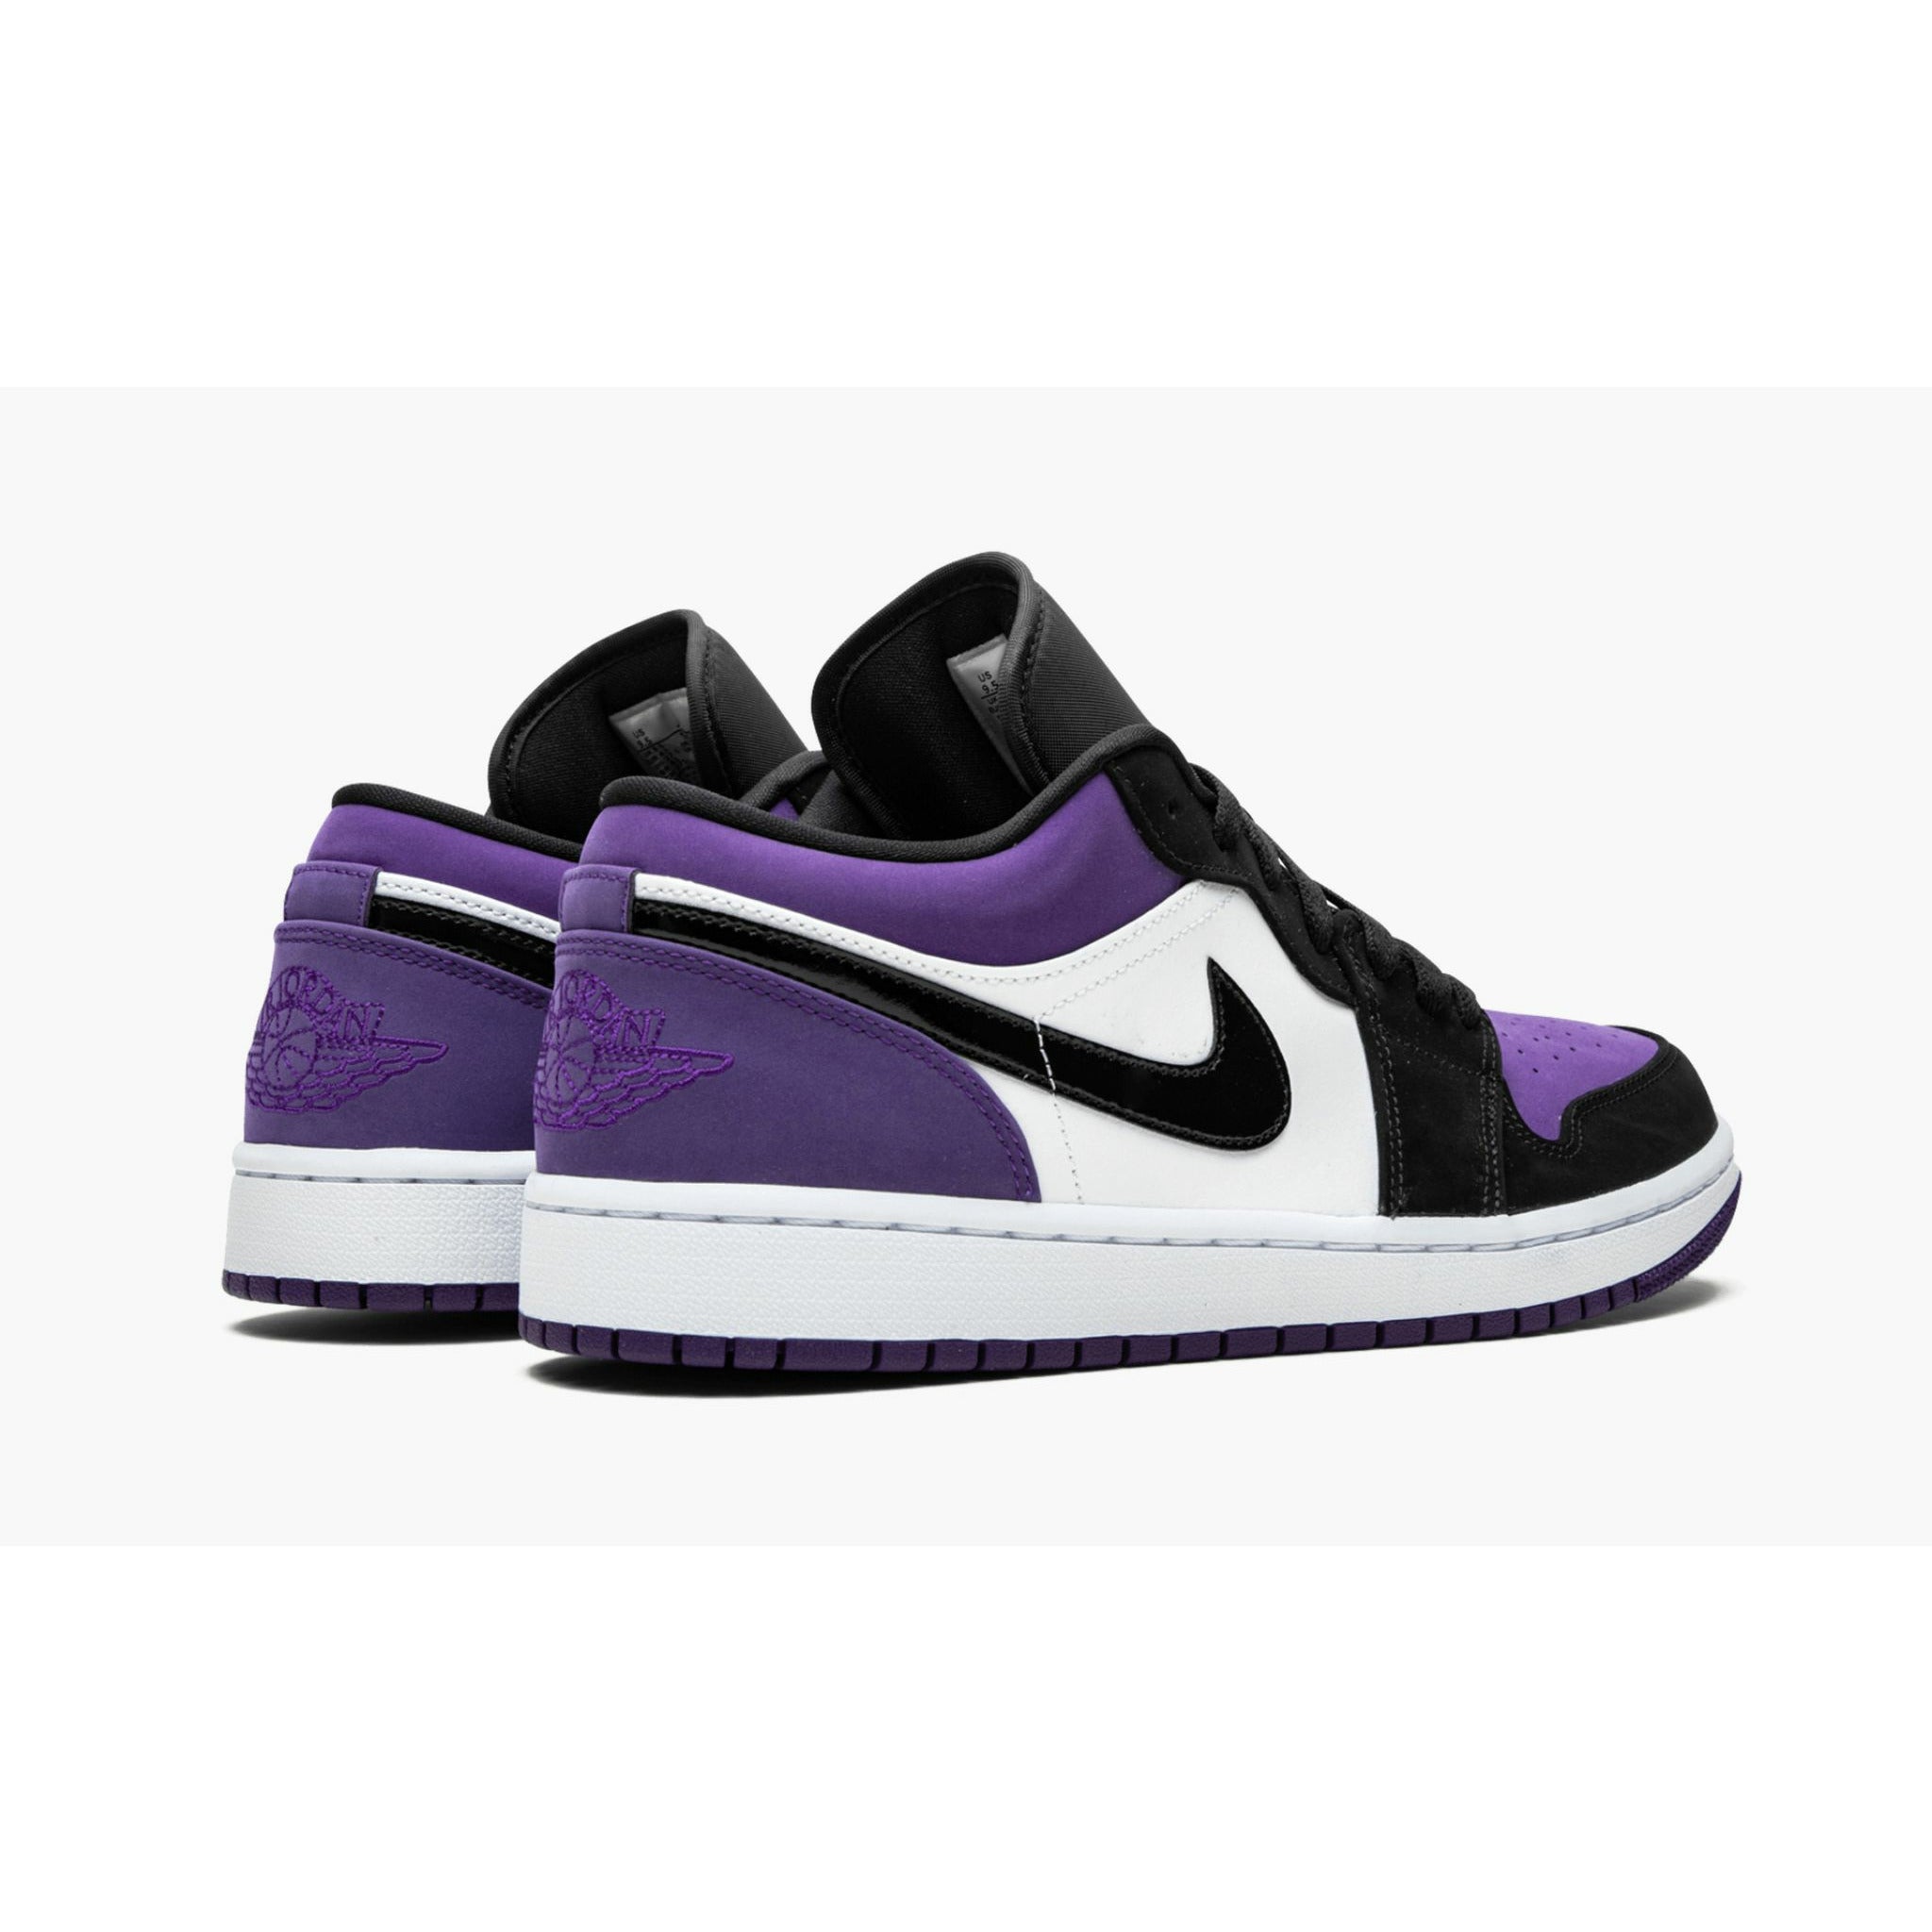 AIR JORDAN 1 LOW "Court Purple"